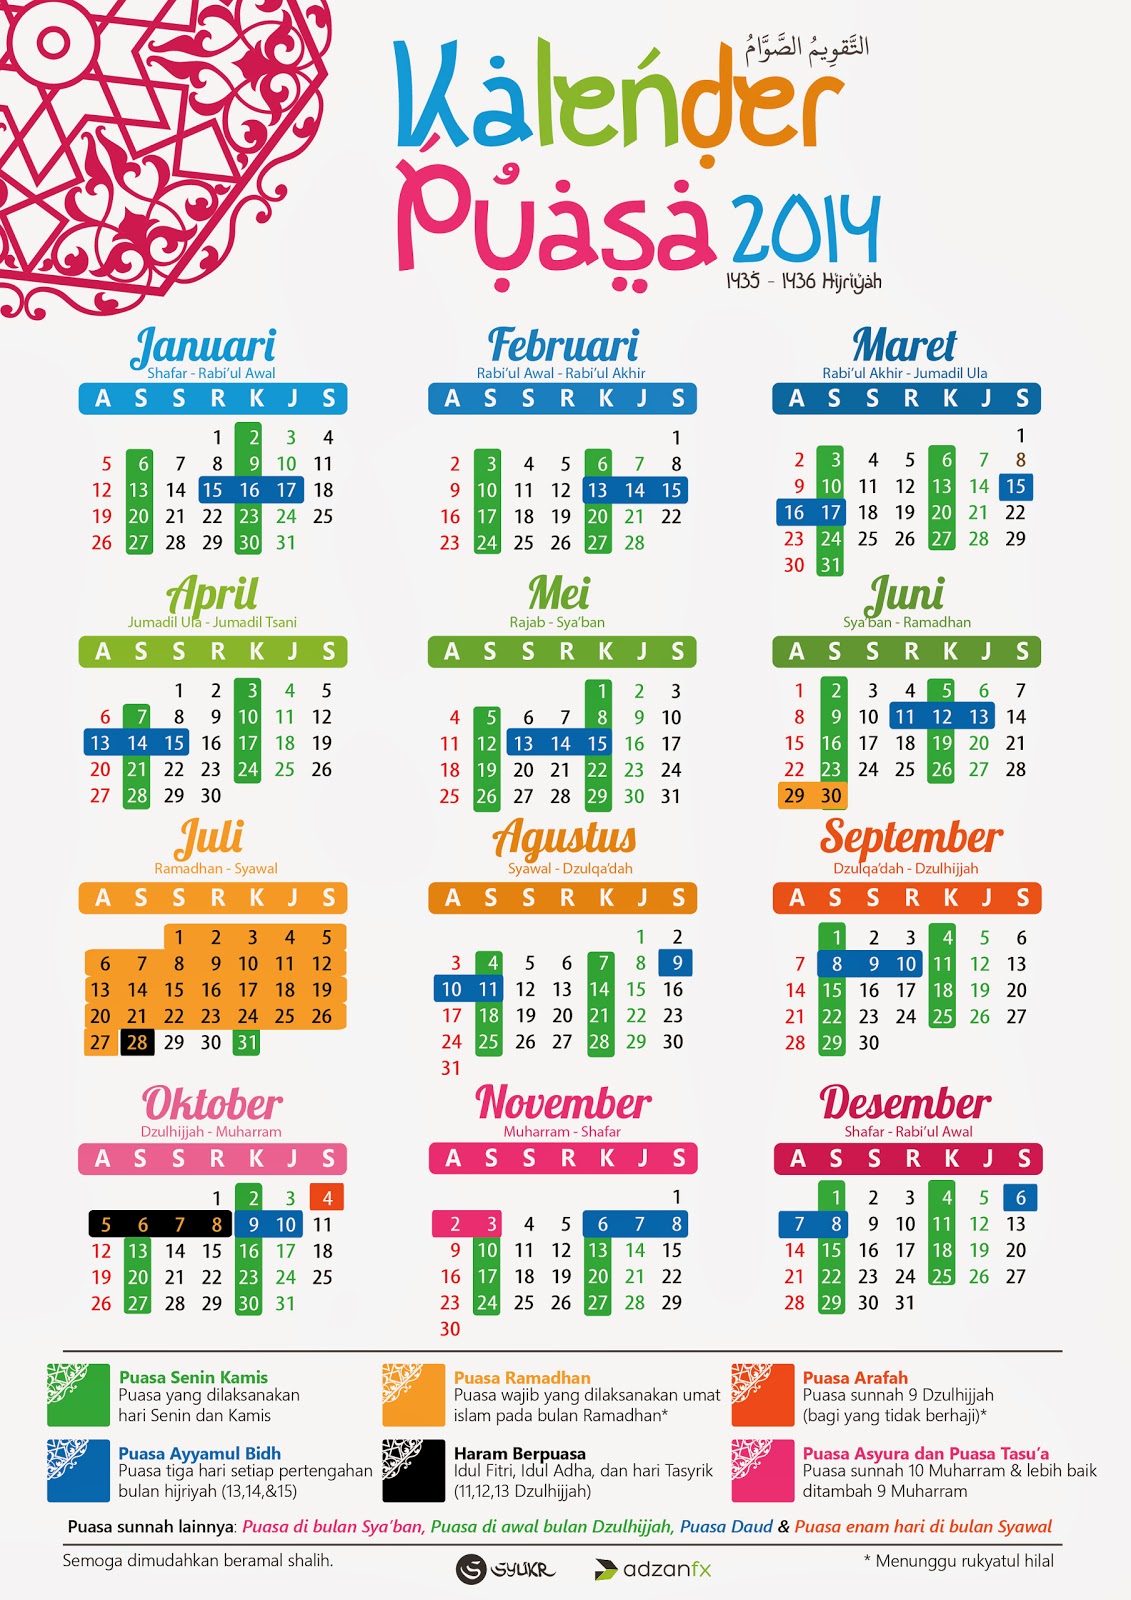 Jadwal Kalender Puasa Terbaru 2014